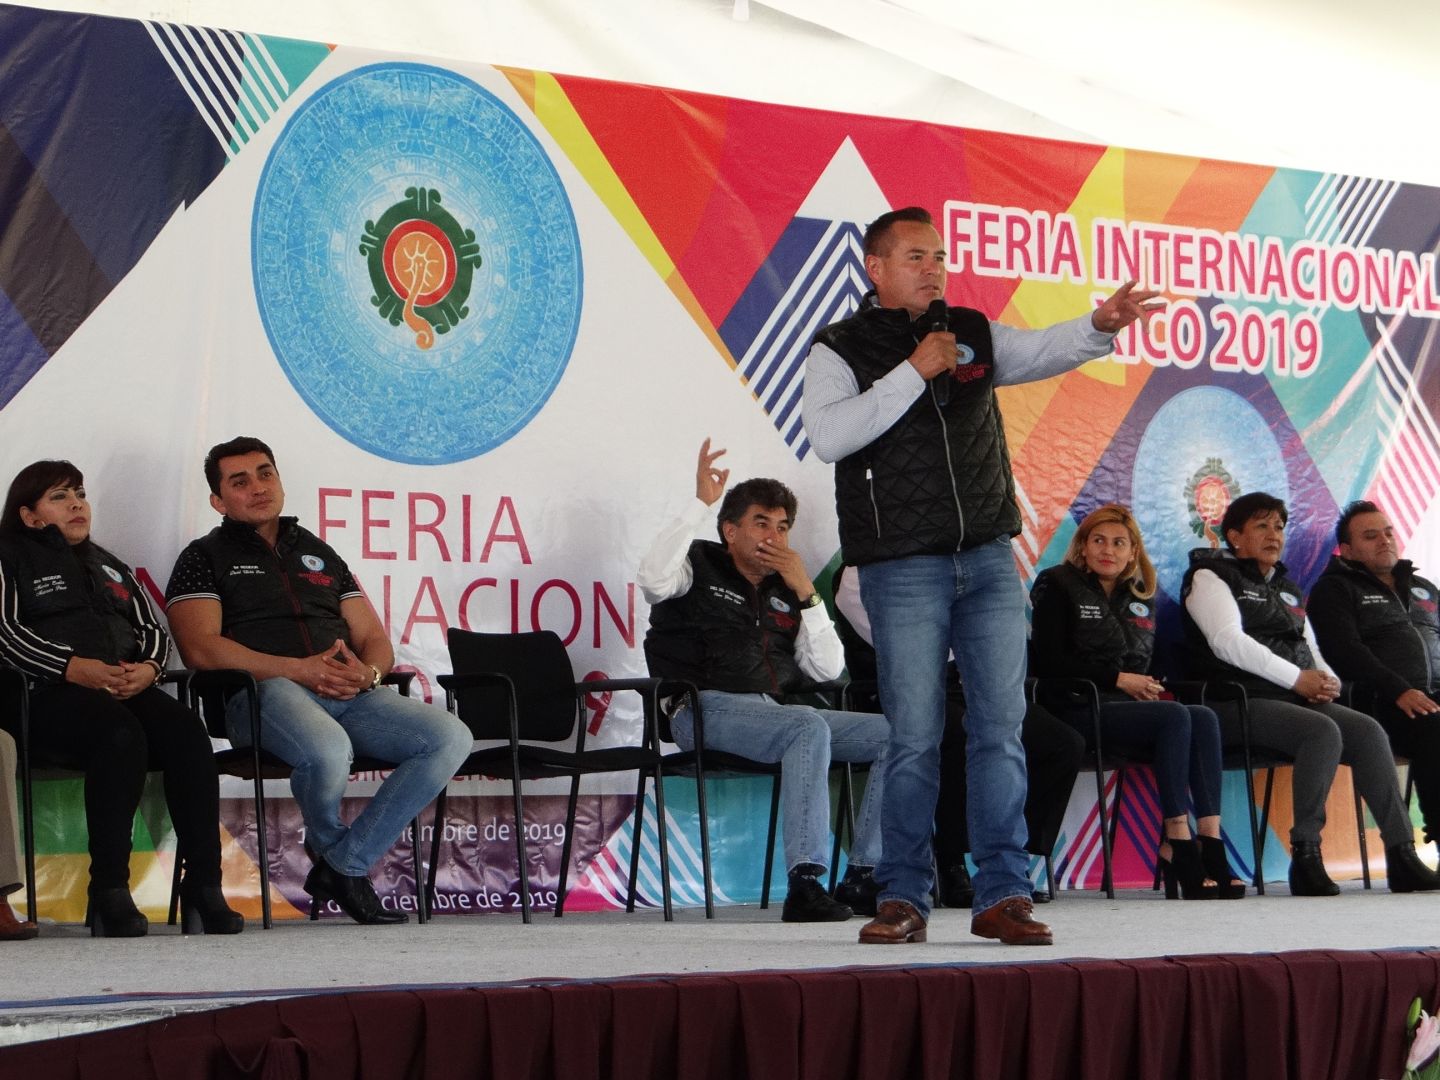 Valle de Chalco Solidaridad se celebrará la ’Feria Internacional Xico 2019’,